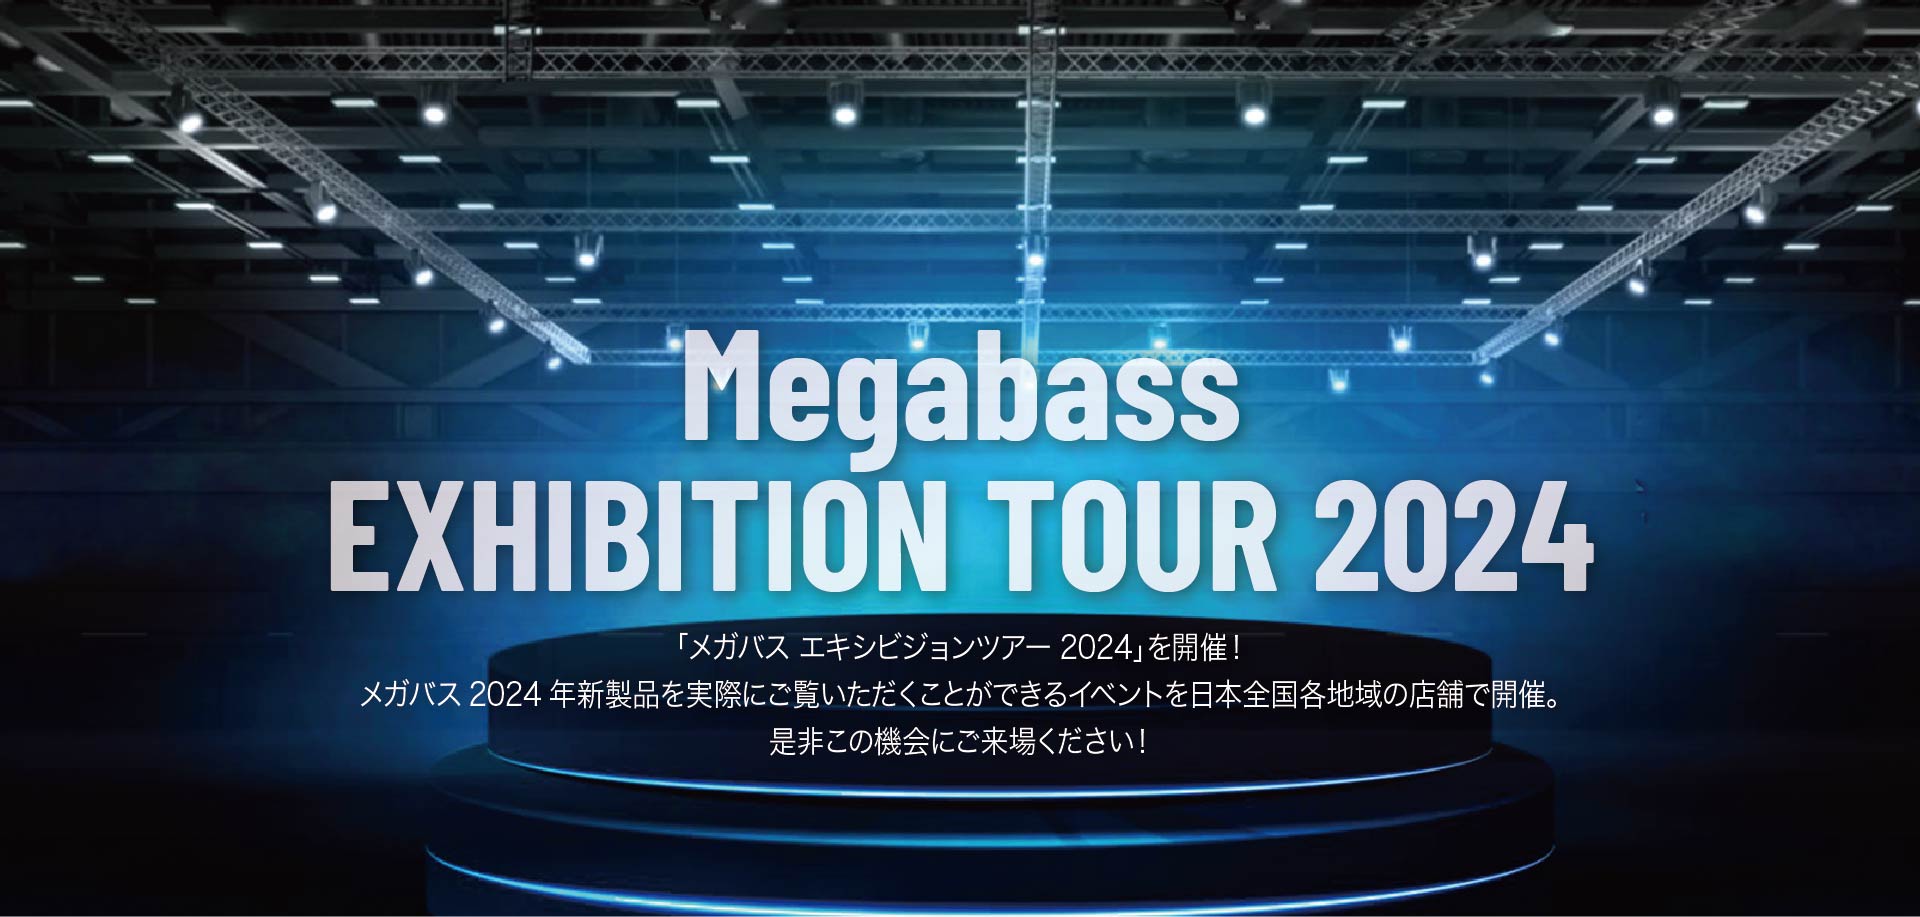 Megabass EXHIBITION TOUR